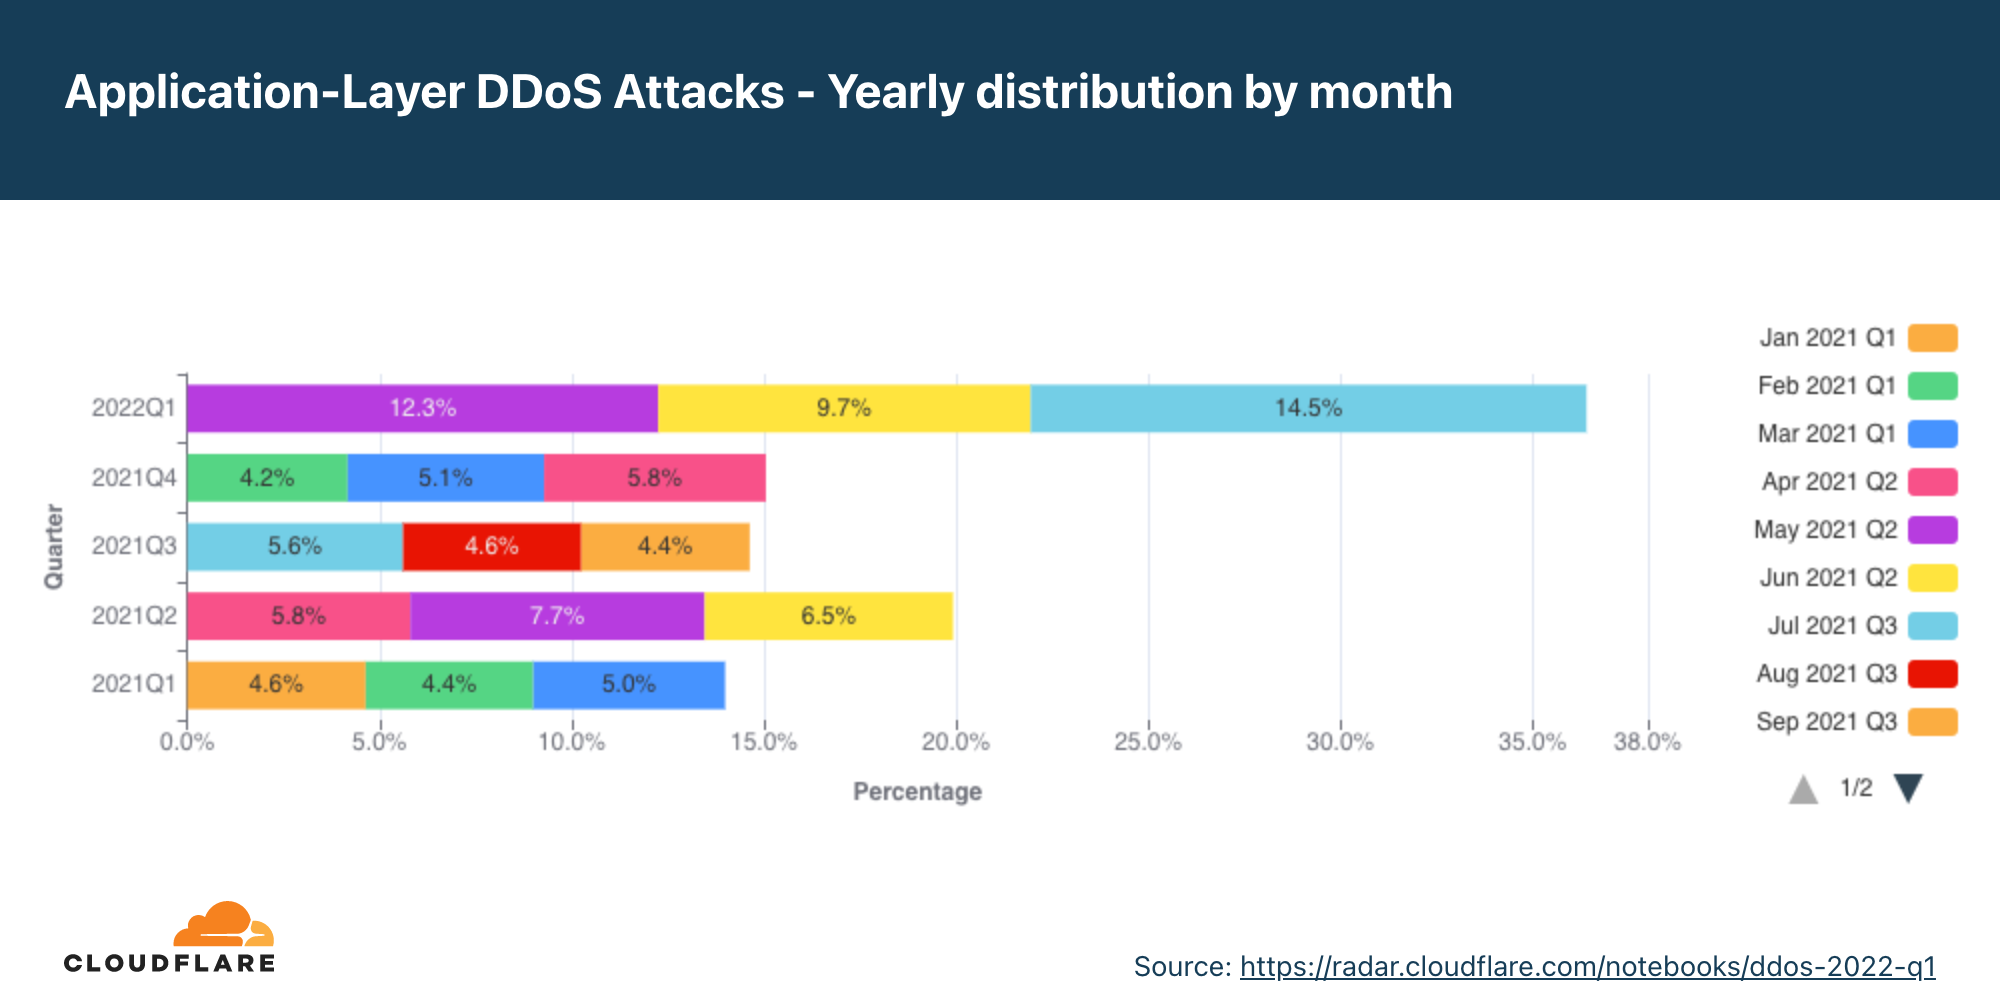 지난 12개월 동안 월별 응용 프로그램 계층 DDoS 공격의 연간 분포 그래프